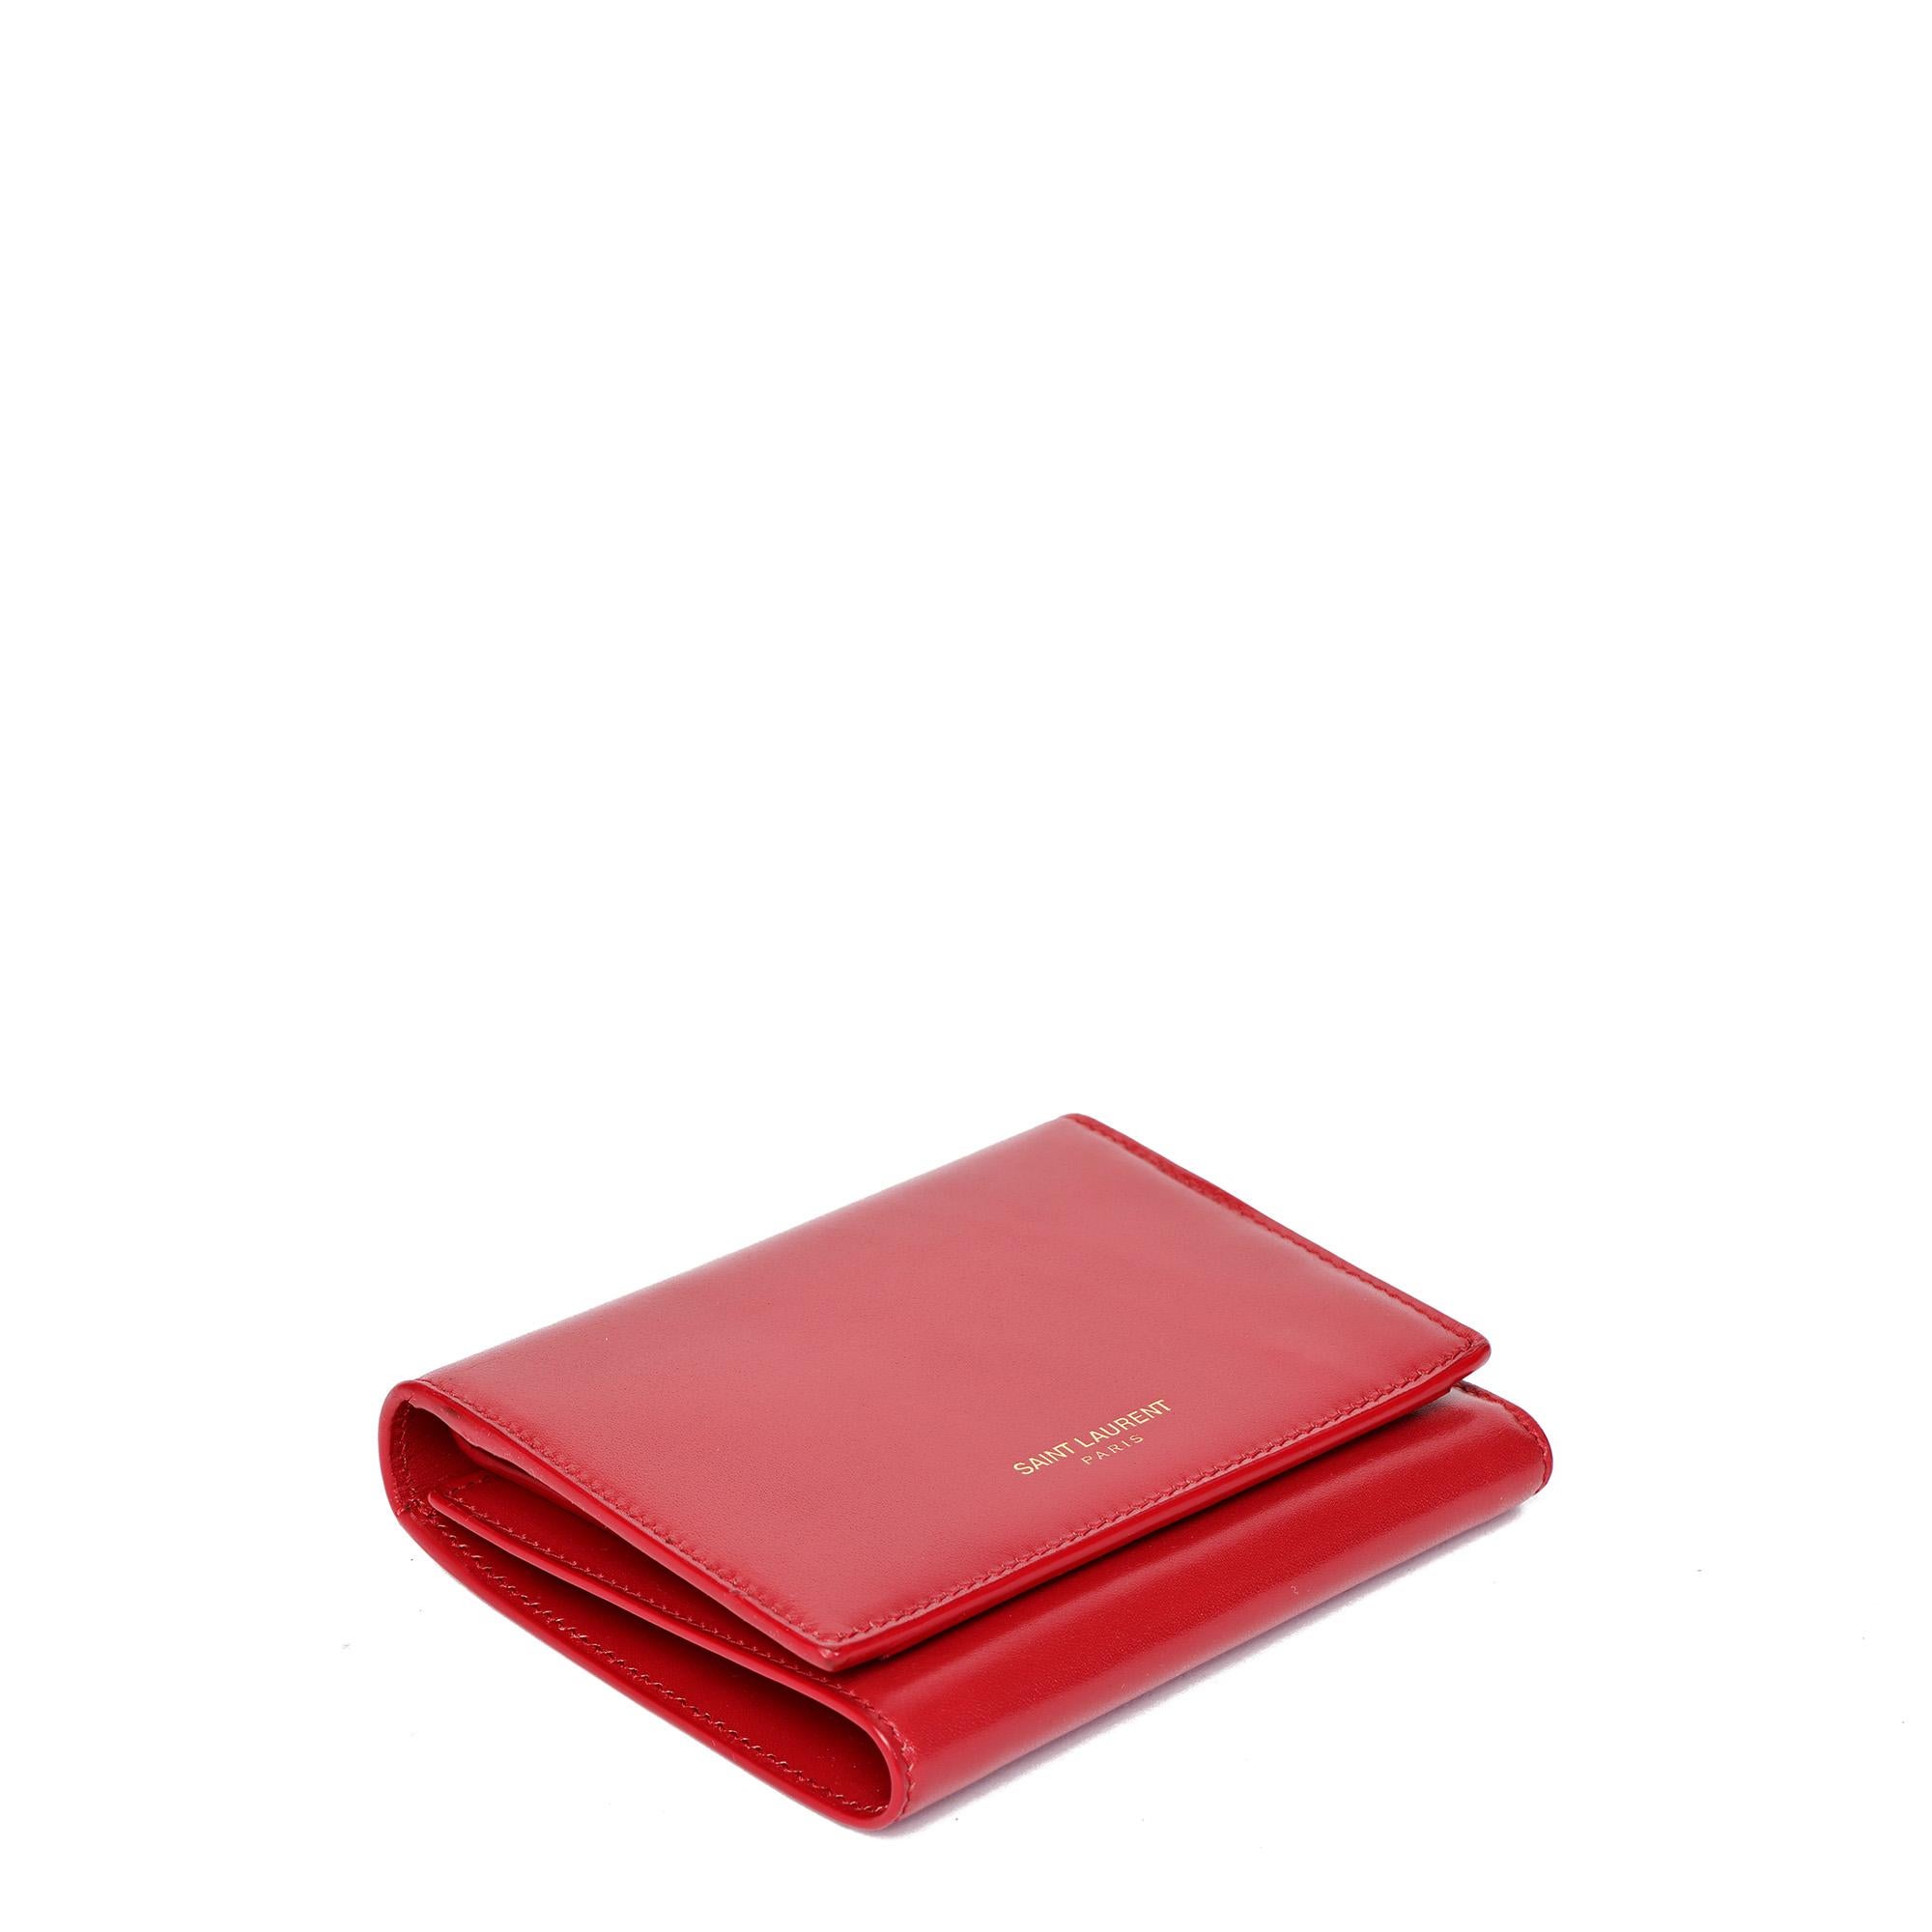 Saint Laurent Rouge Orient Portefeuille compact bi-fold en cuir lisse et brillant

NOTES D'ÉTAT
L'extérieur est en excellent état avec de légers signes d'utilisation.
L'intérieur est en excellent état avec de légers signes d'utilisation.
Le matériel